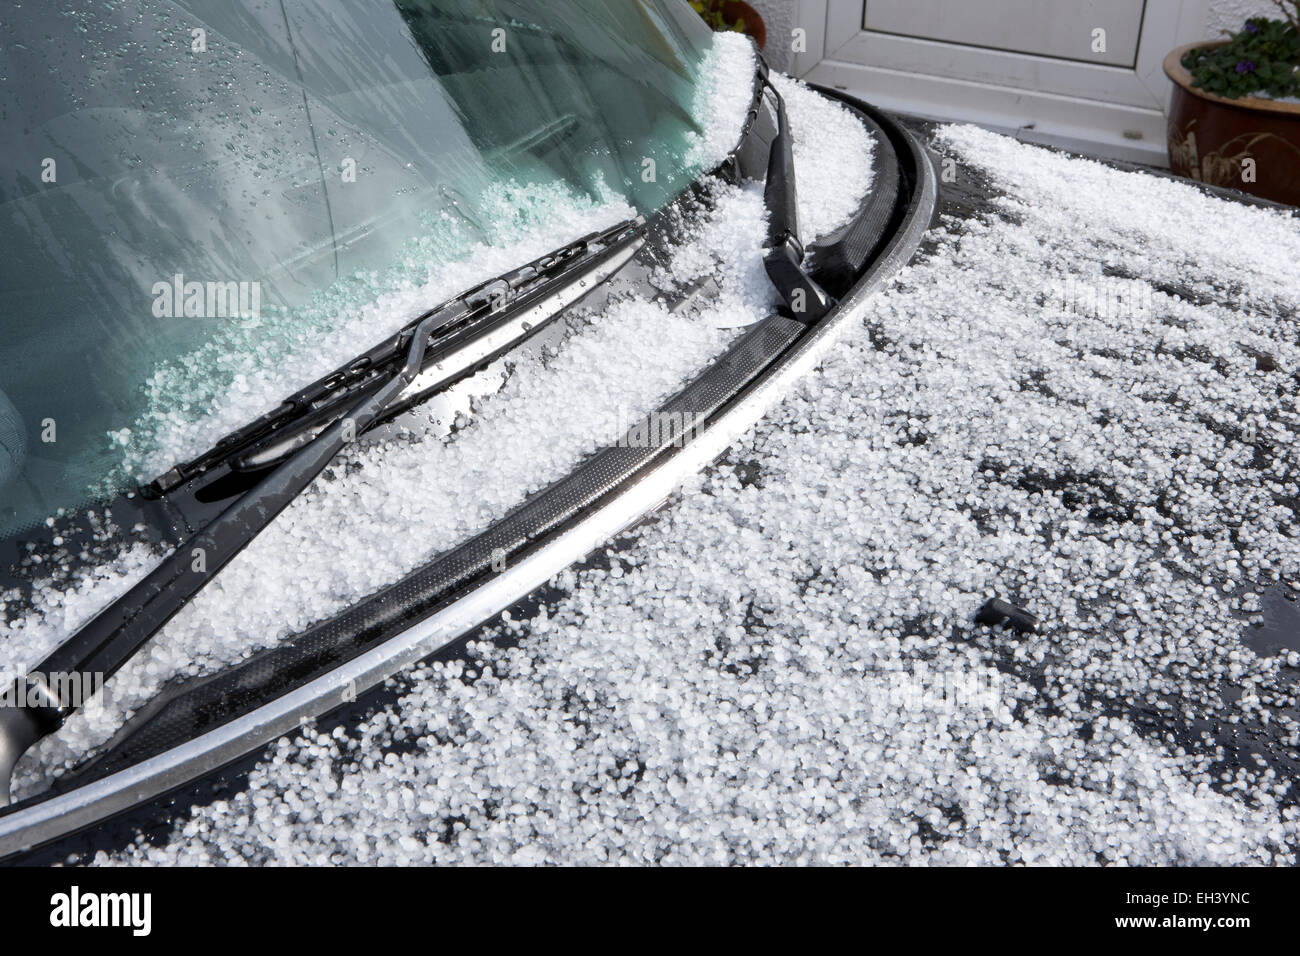 Le pare-brise, essuie-glace et le capot couvert de neige, sur une mini-voiture, noir Banque D'Images